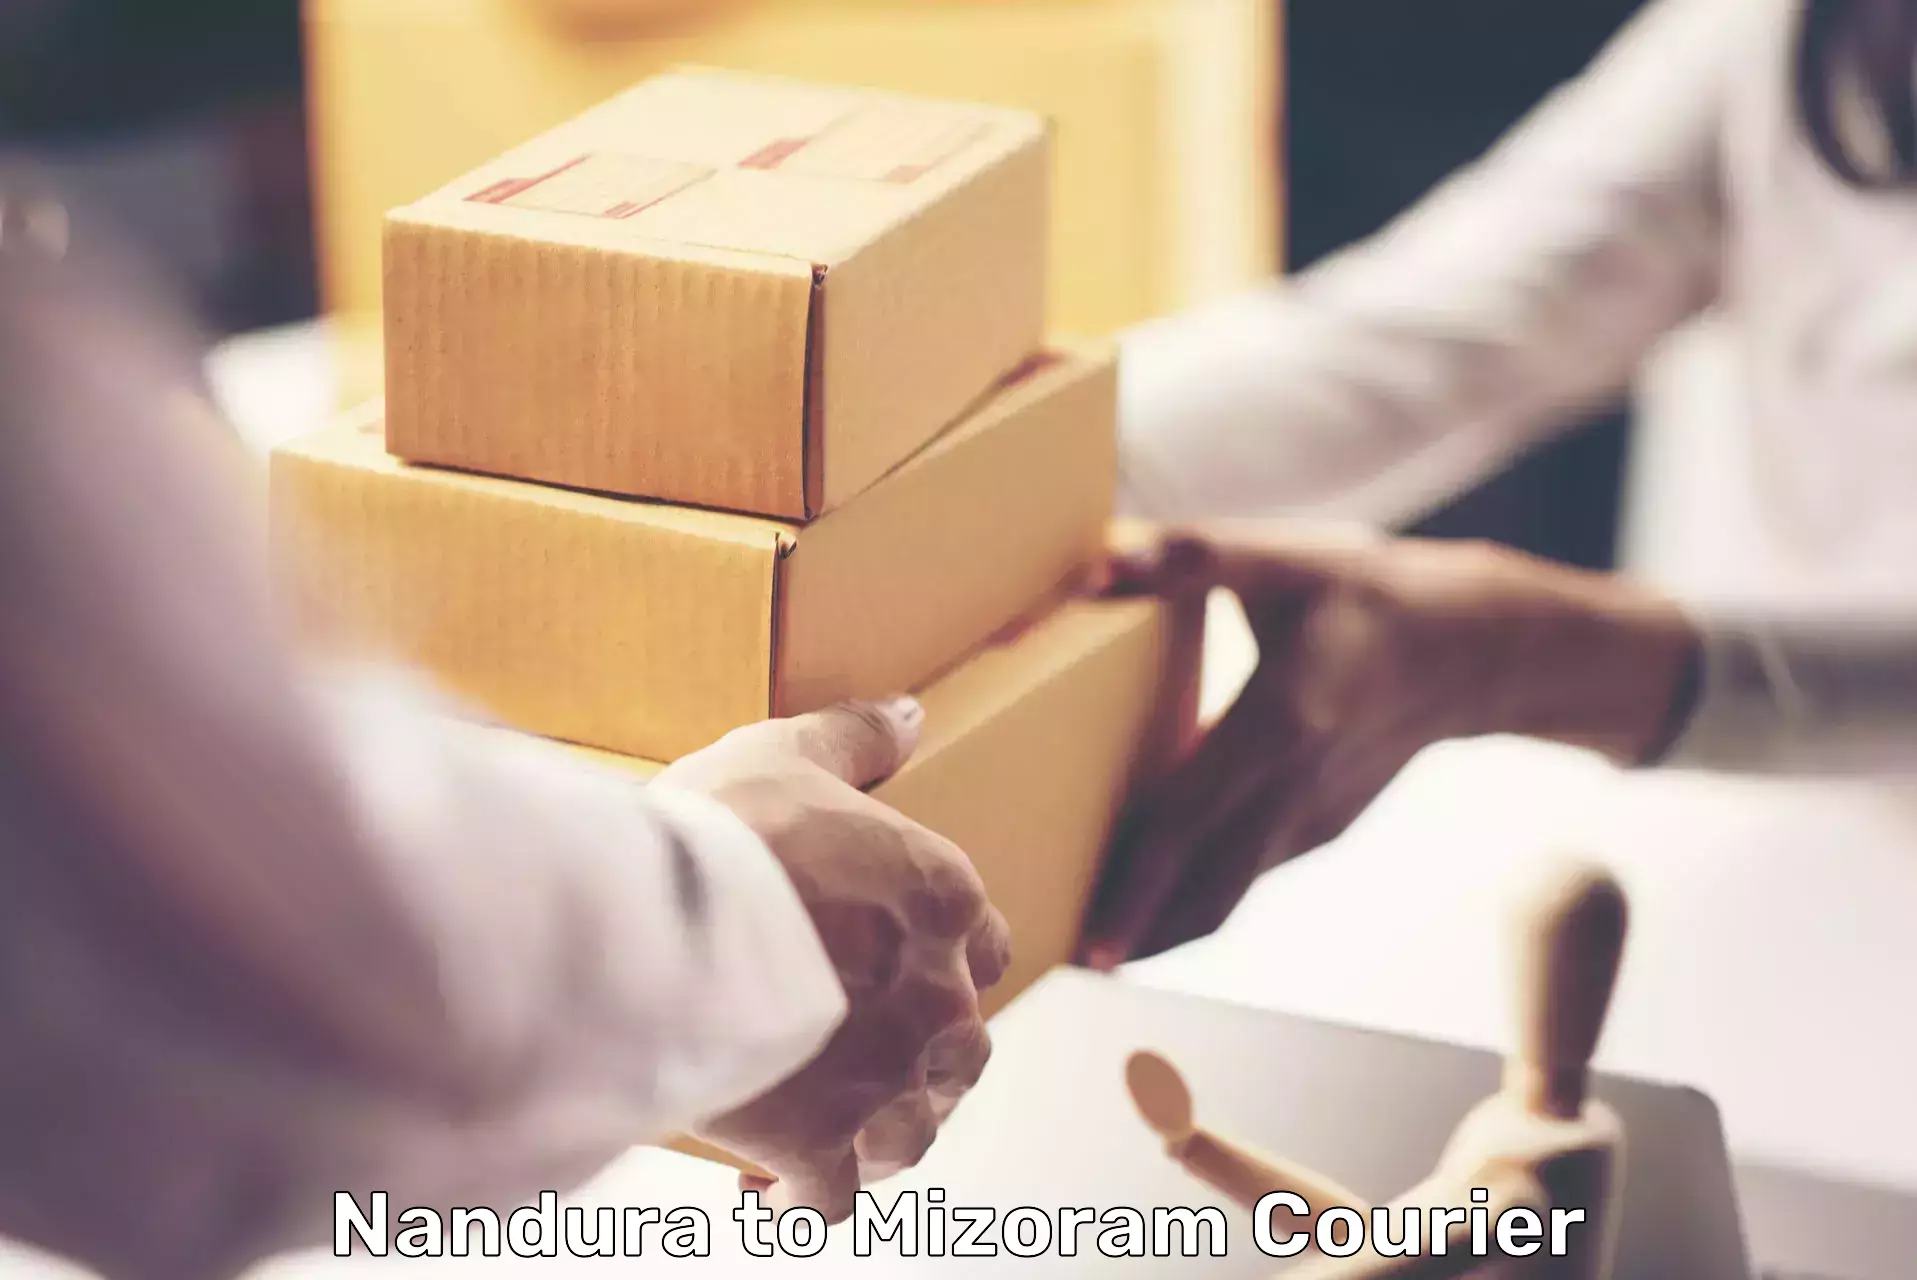 Quality courier services Nandura to Mizoram